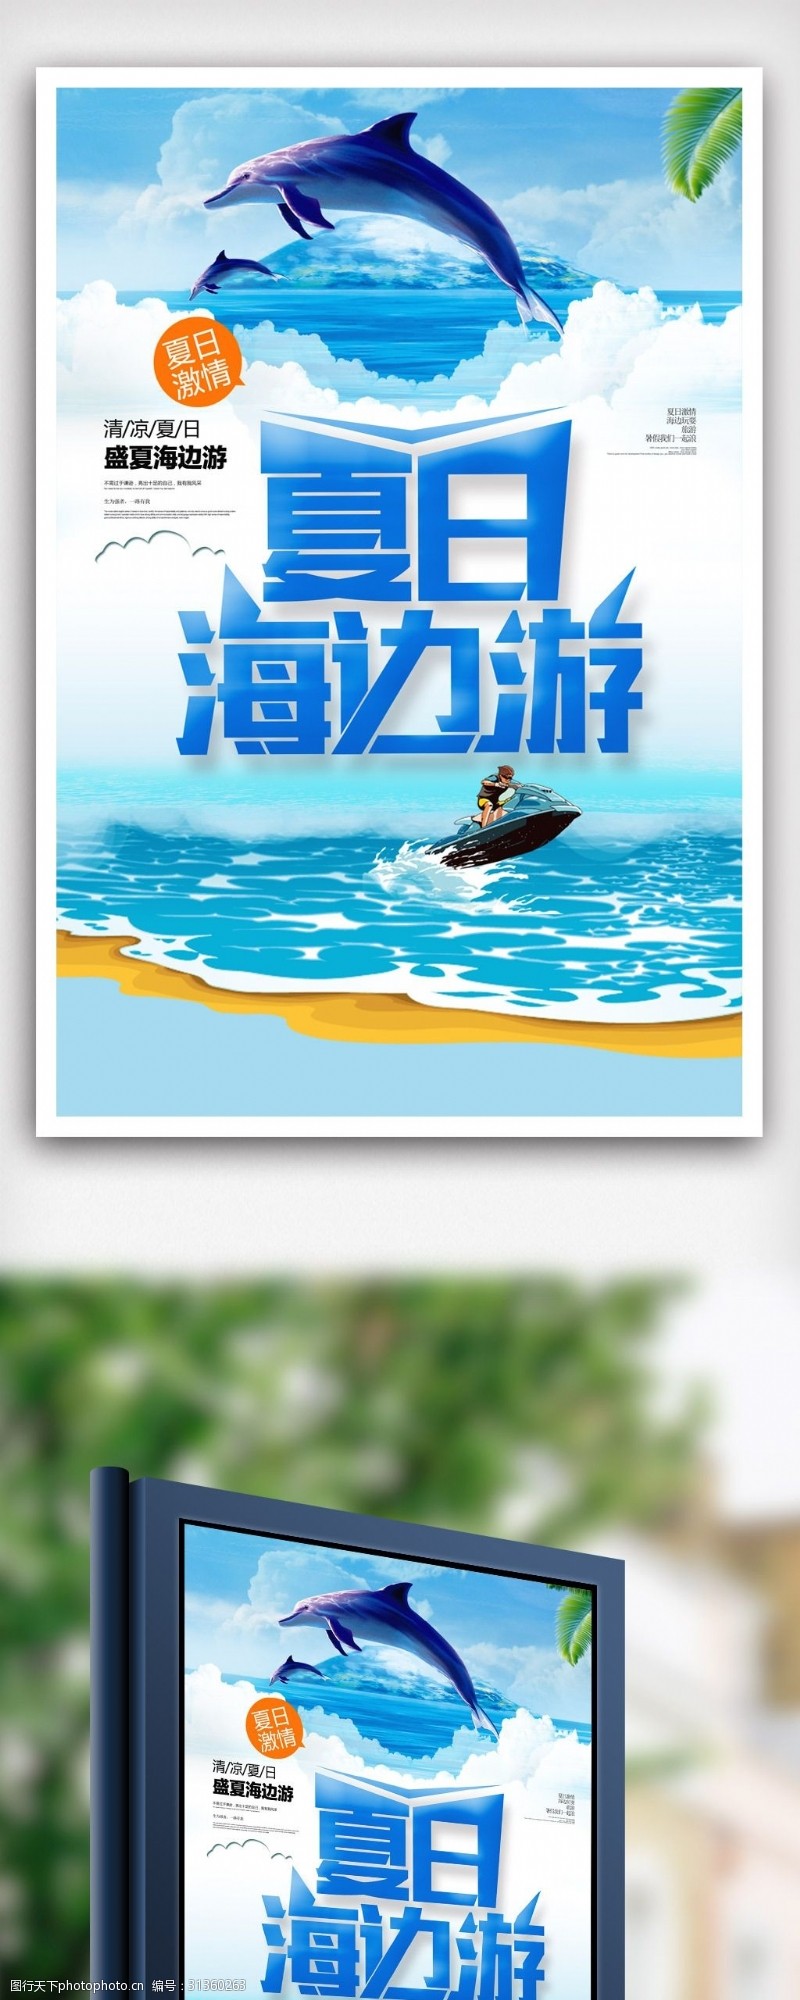 毕业旅行蓝色夏日海边游海报设计.psd